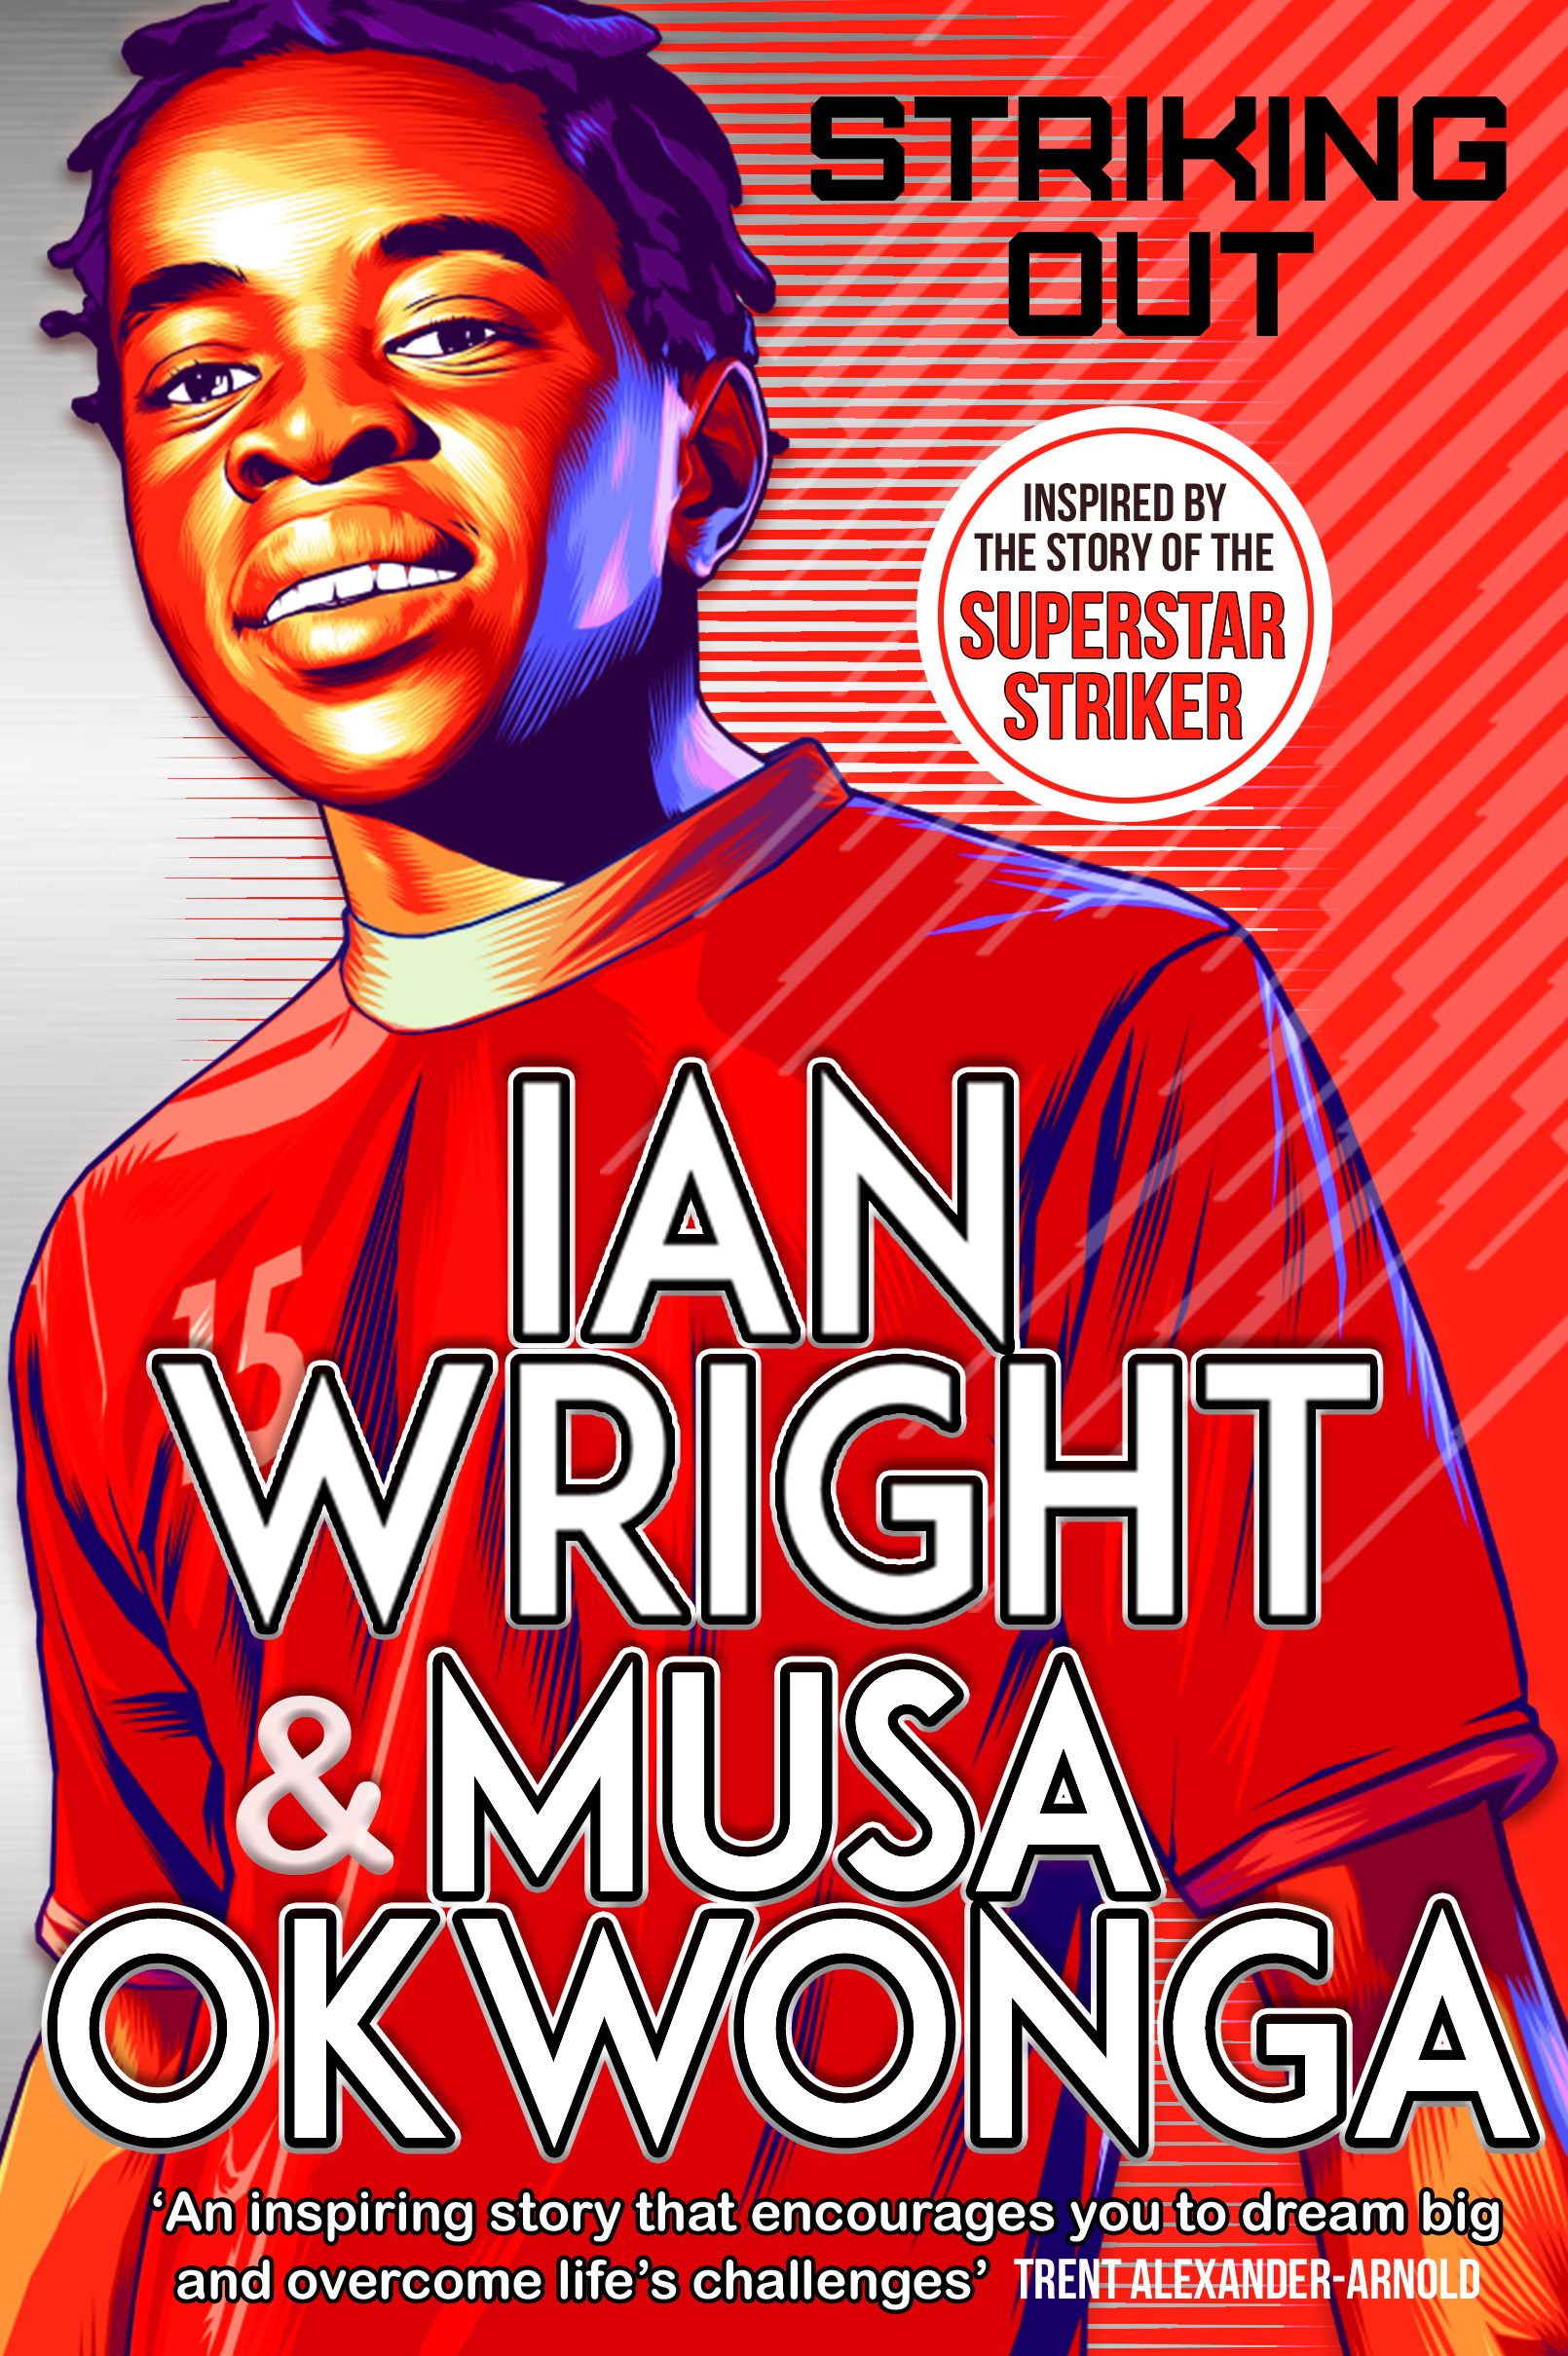 Striking Out by Ian Wright and Musa Okwonga